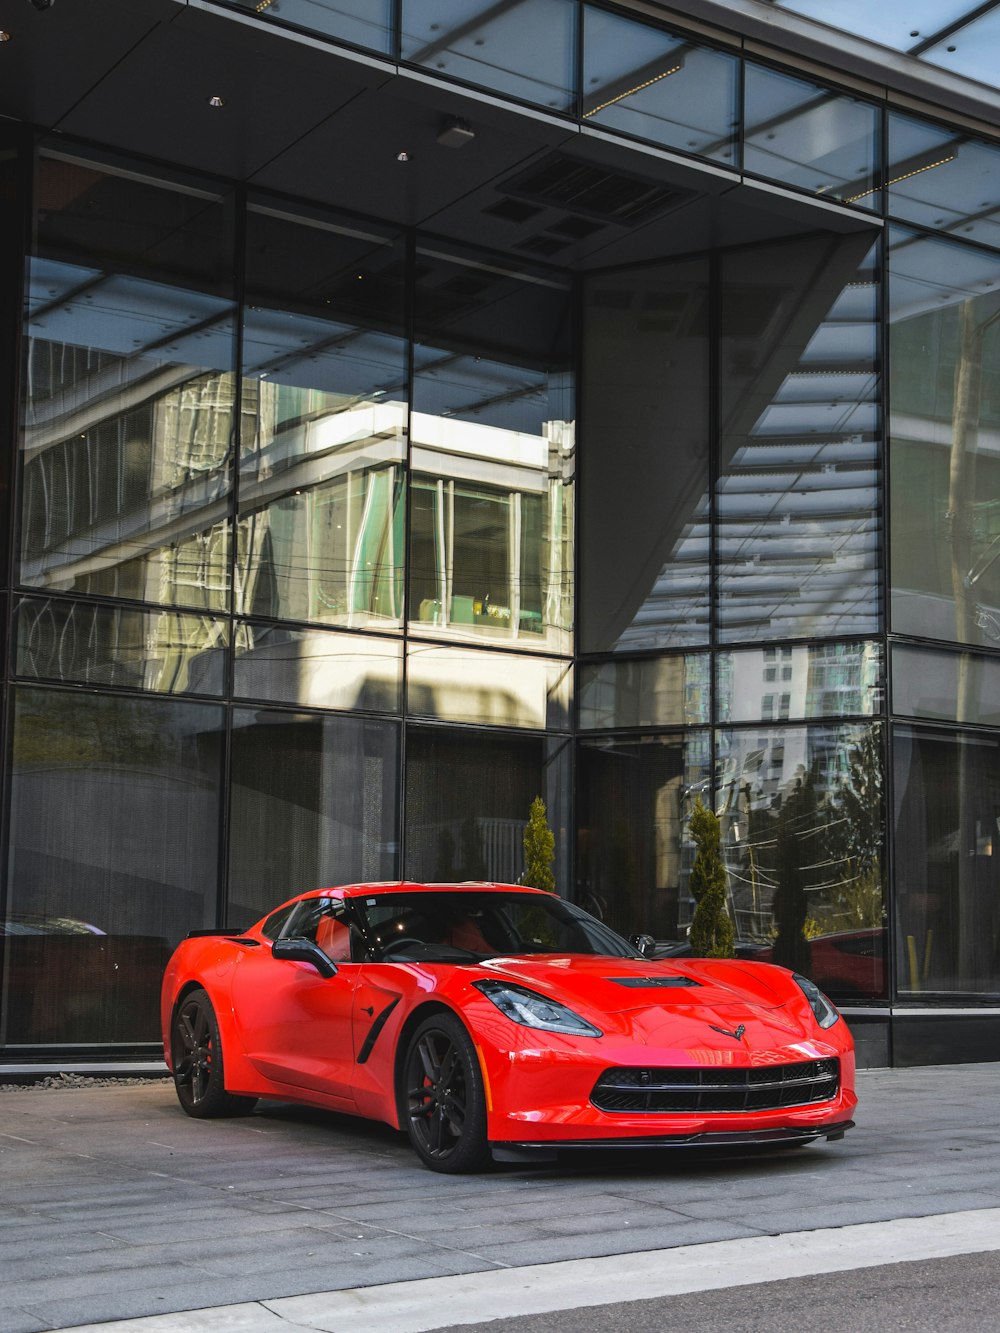 cupê esportivo Corvette vermelho ao lado do prédio de vidro durante o dia